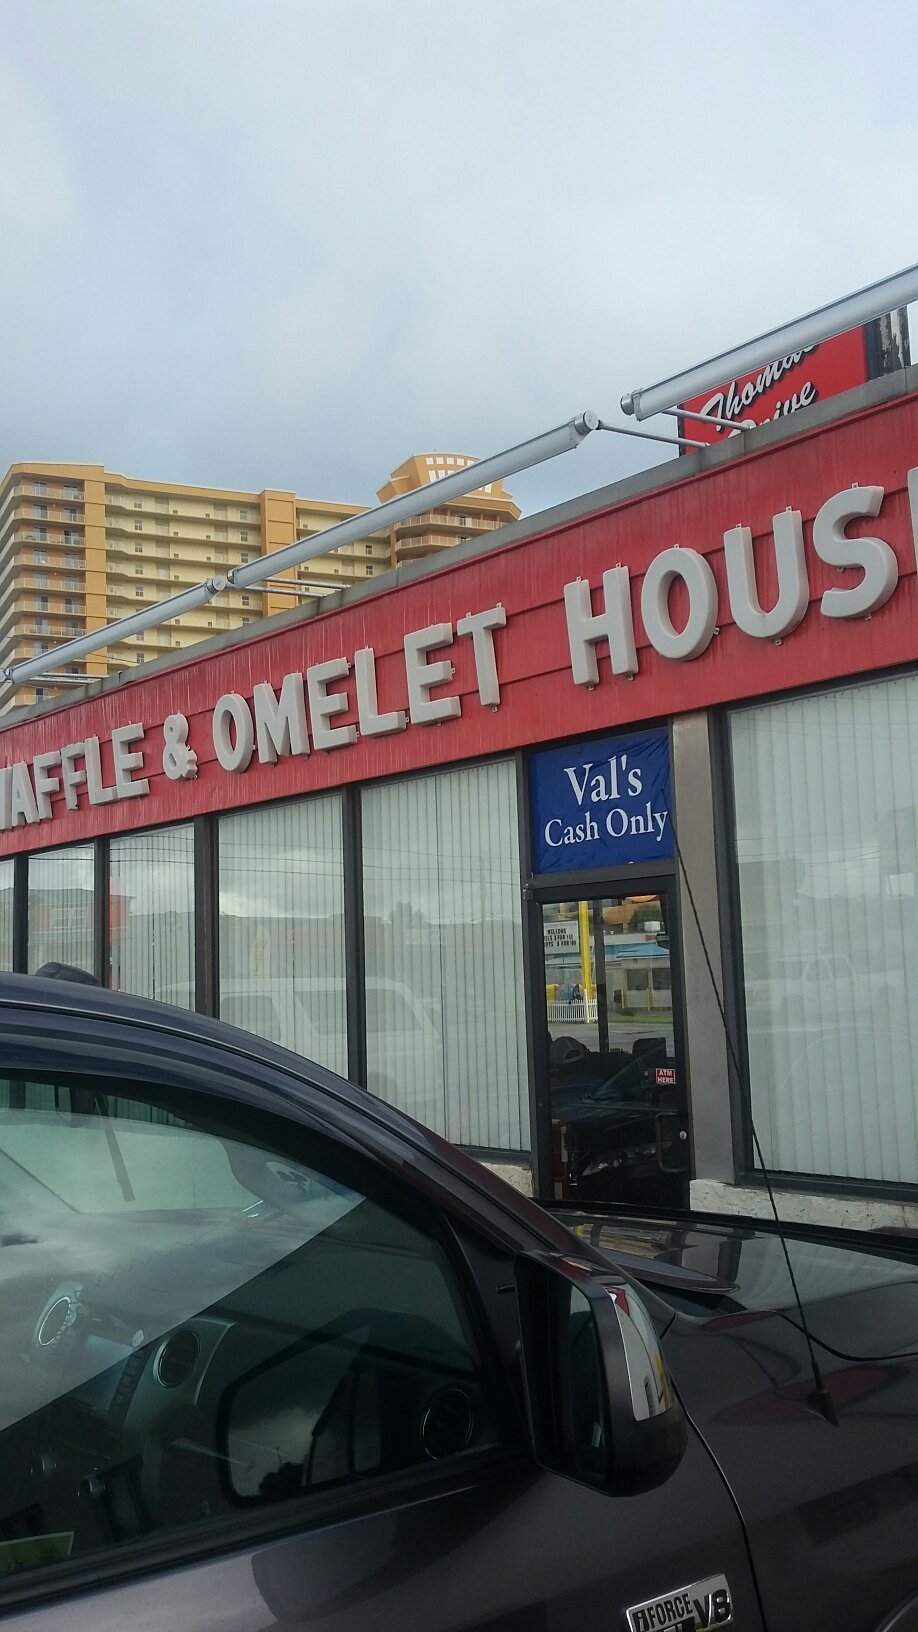 Omelet House